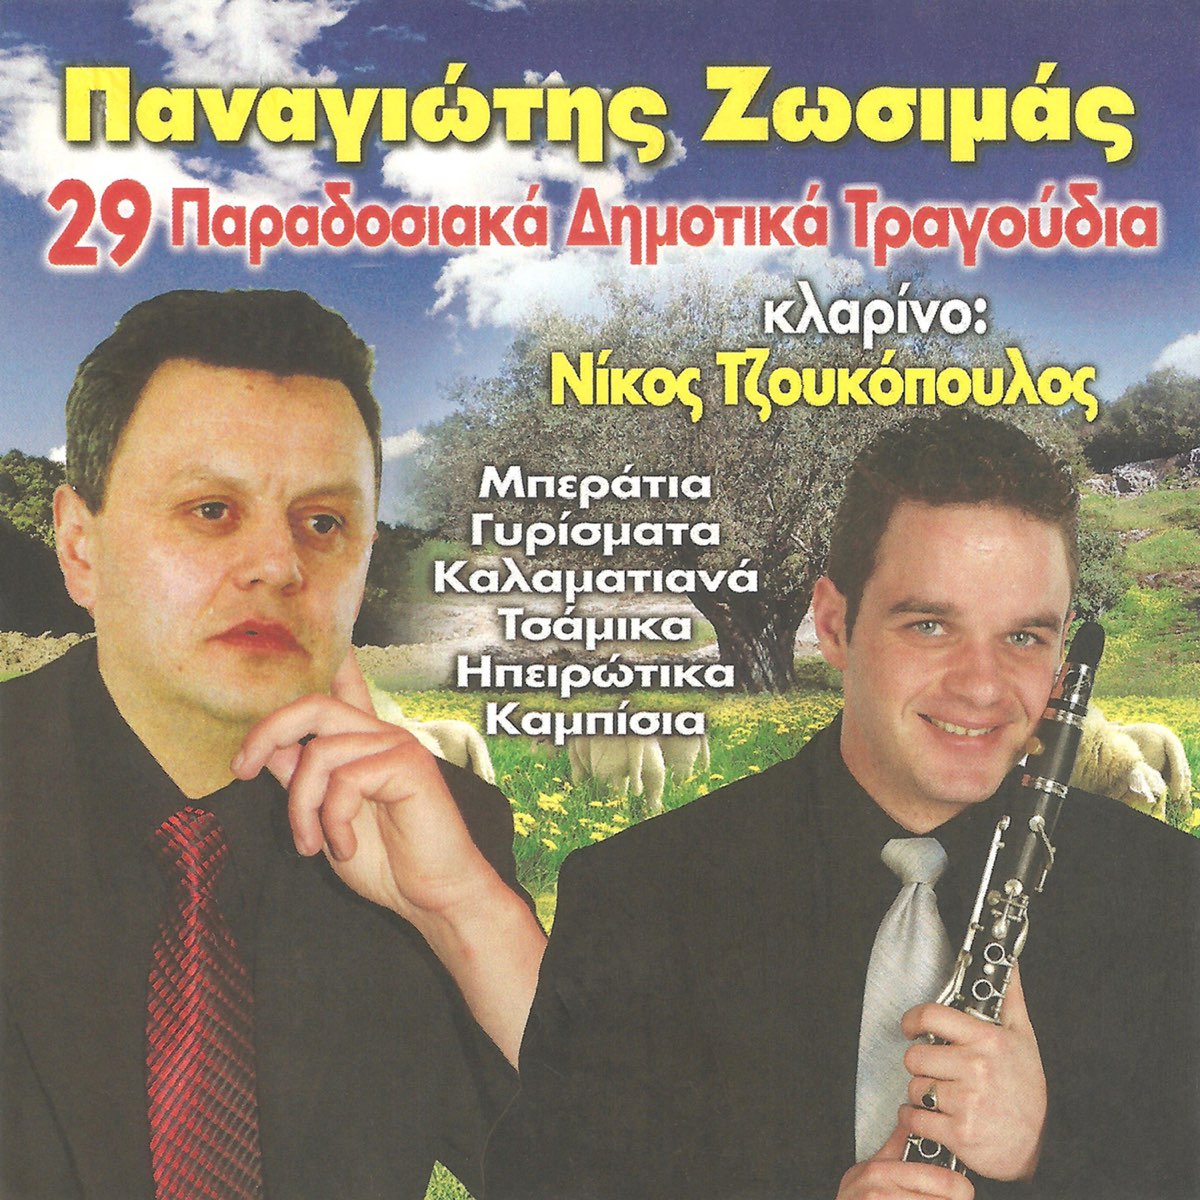 29 Παραδοσιακά Δημοτικά Τραγούδια - Album by Παναγιώτης Ζωσιμάς & Nikos  Tzoukopoulos - Apple Music